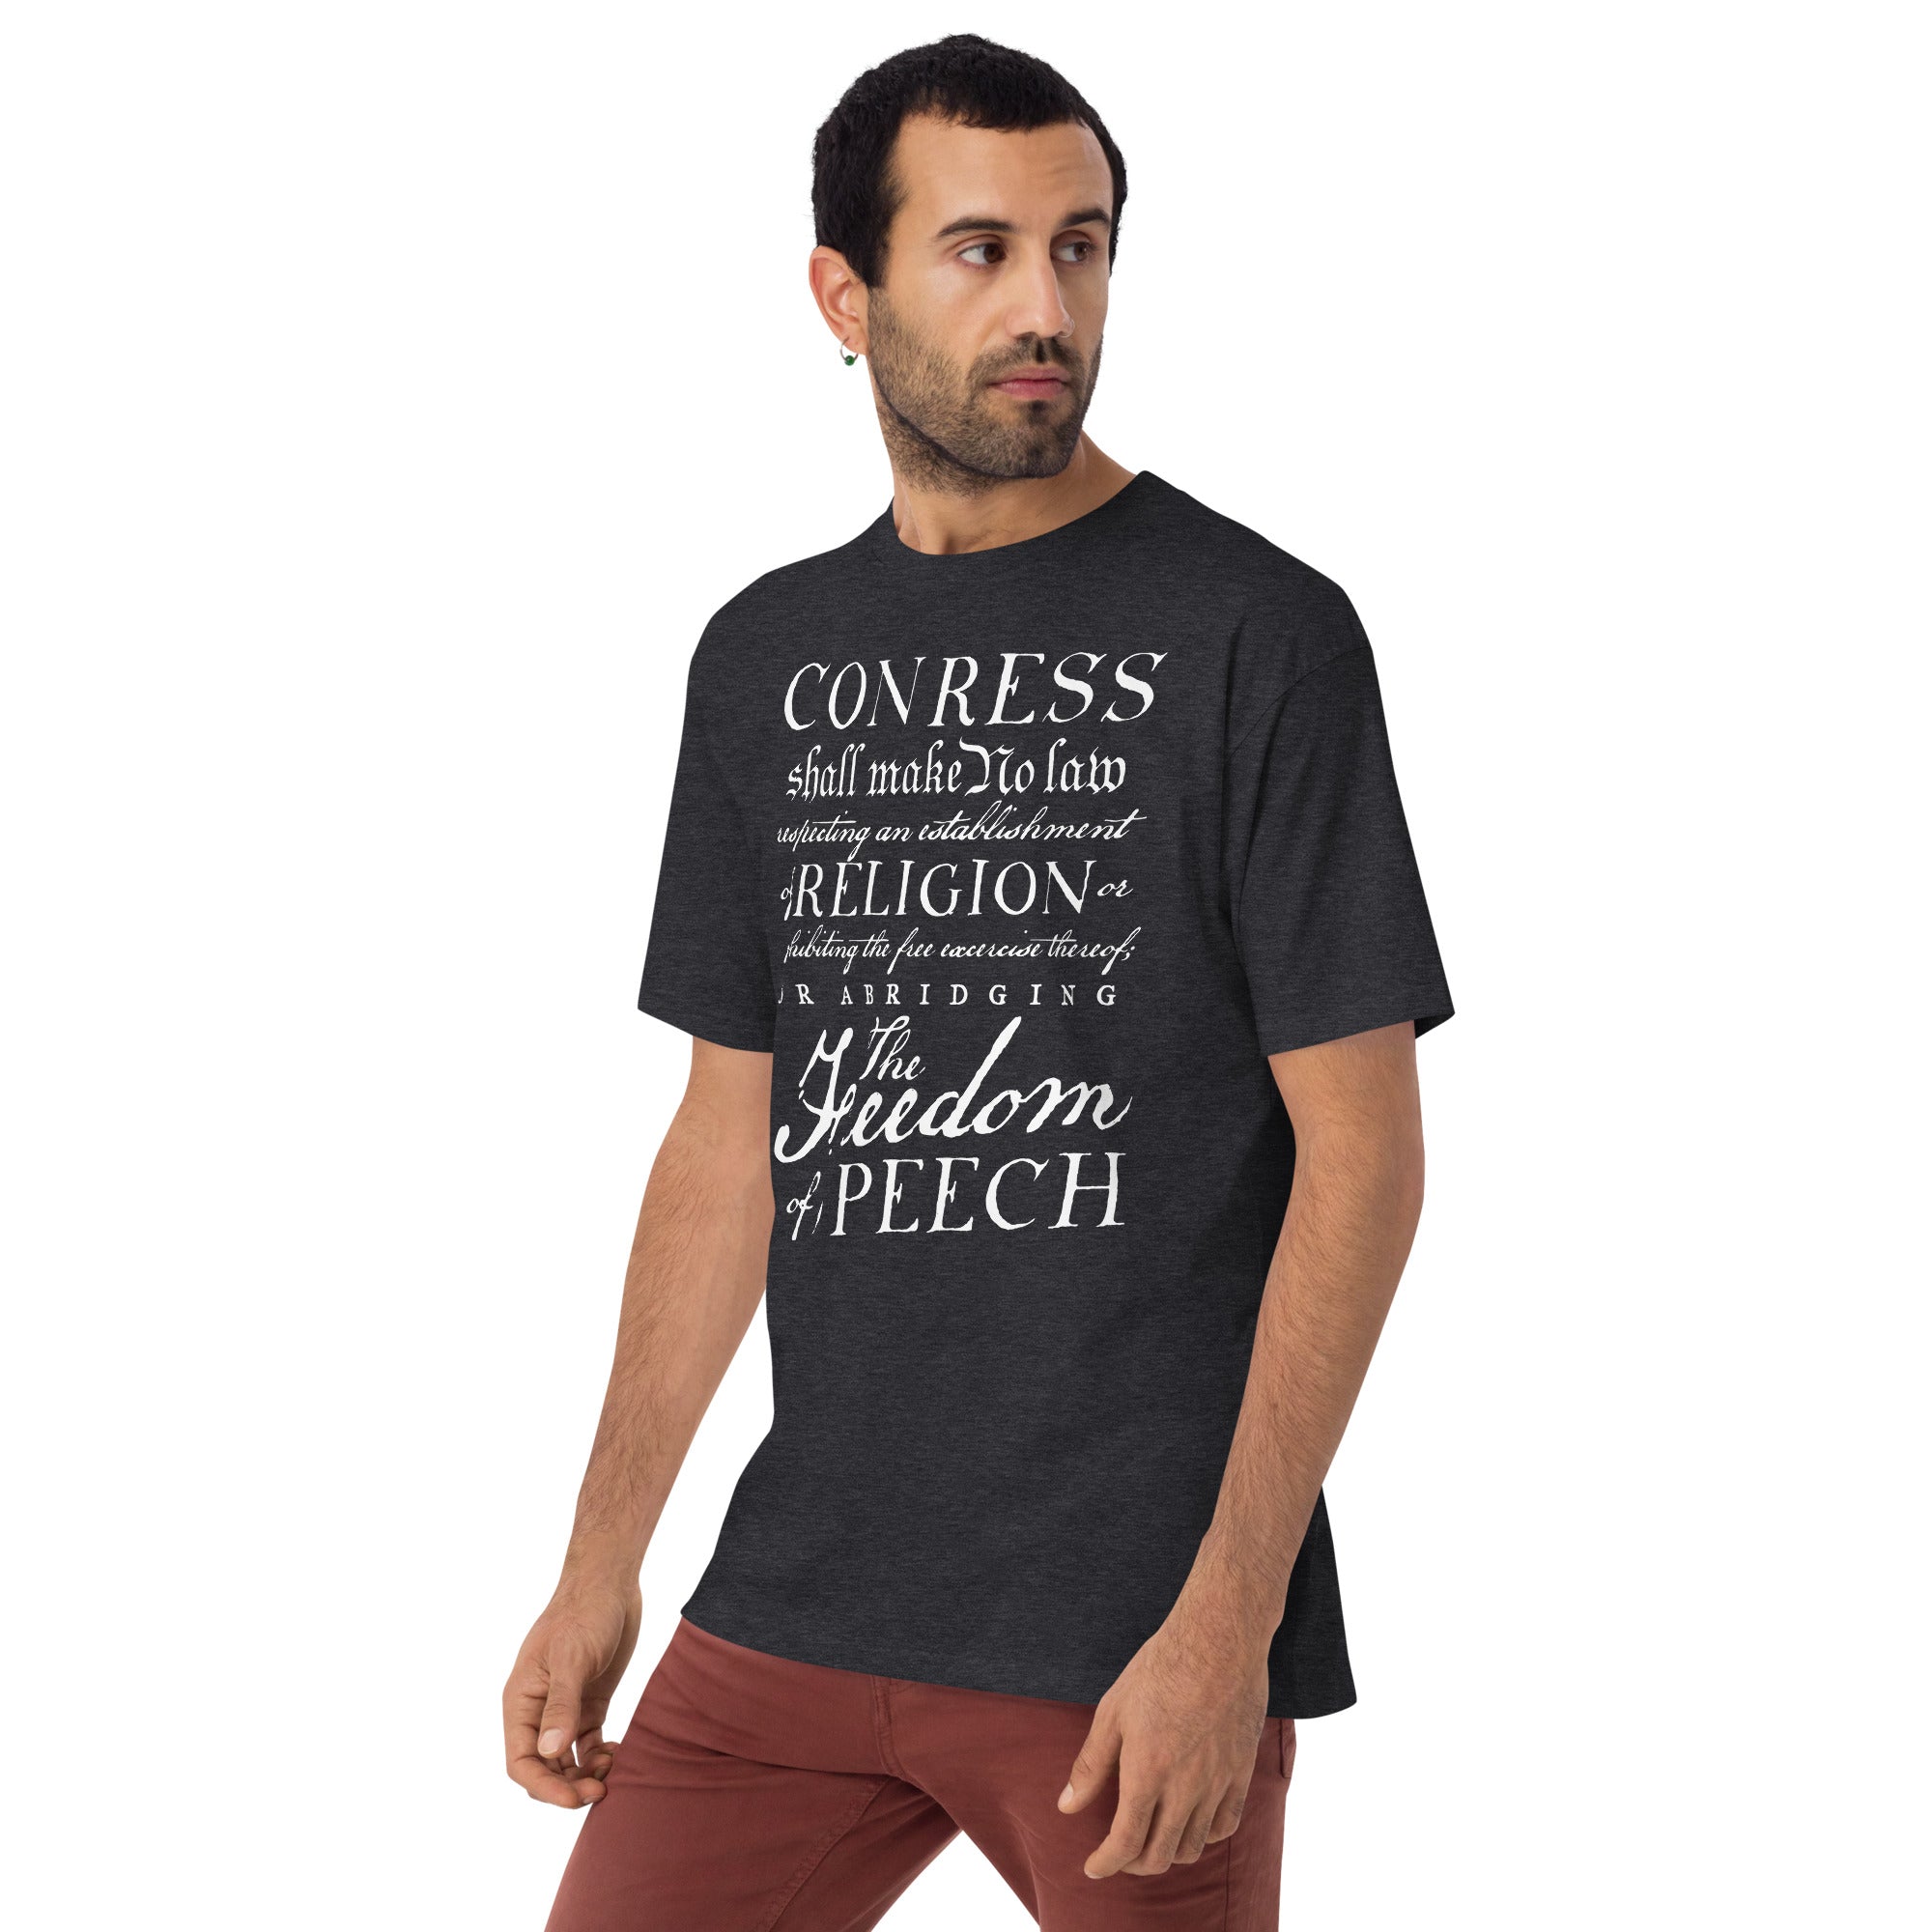 1st Amendment Freedom of Speech Men’s Heavyweight T-Shirt